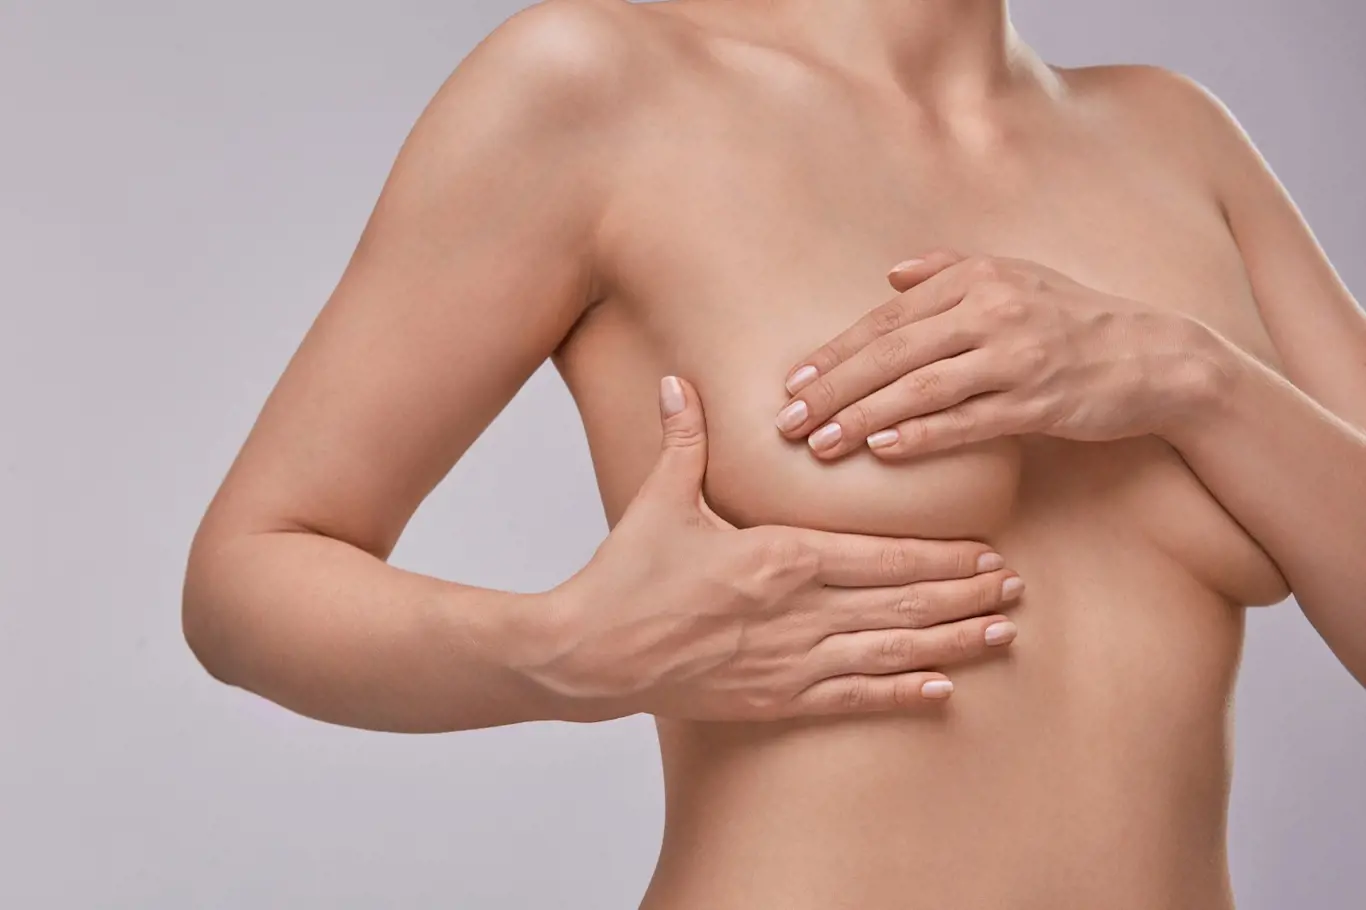 Samovyšetření prsou jako prevence rakoviny